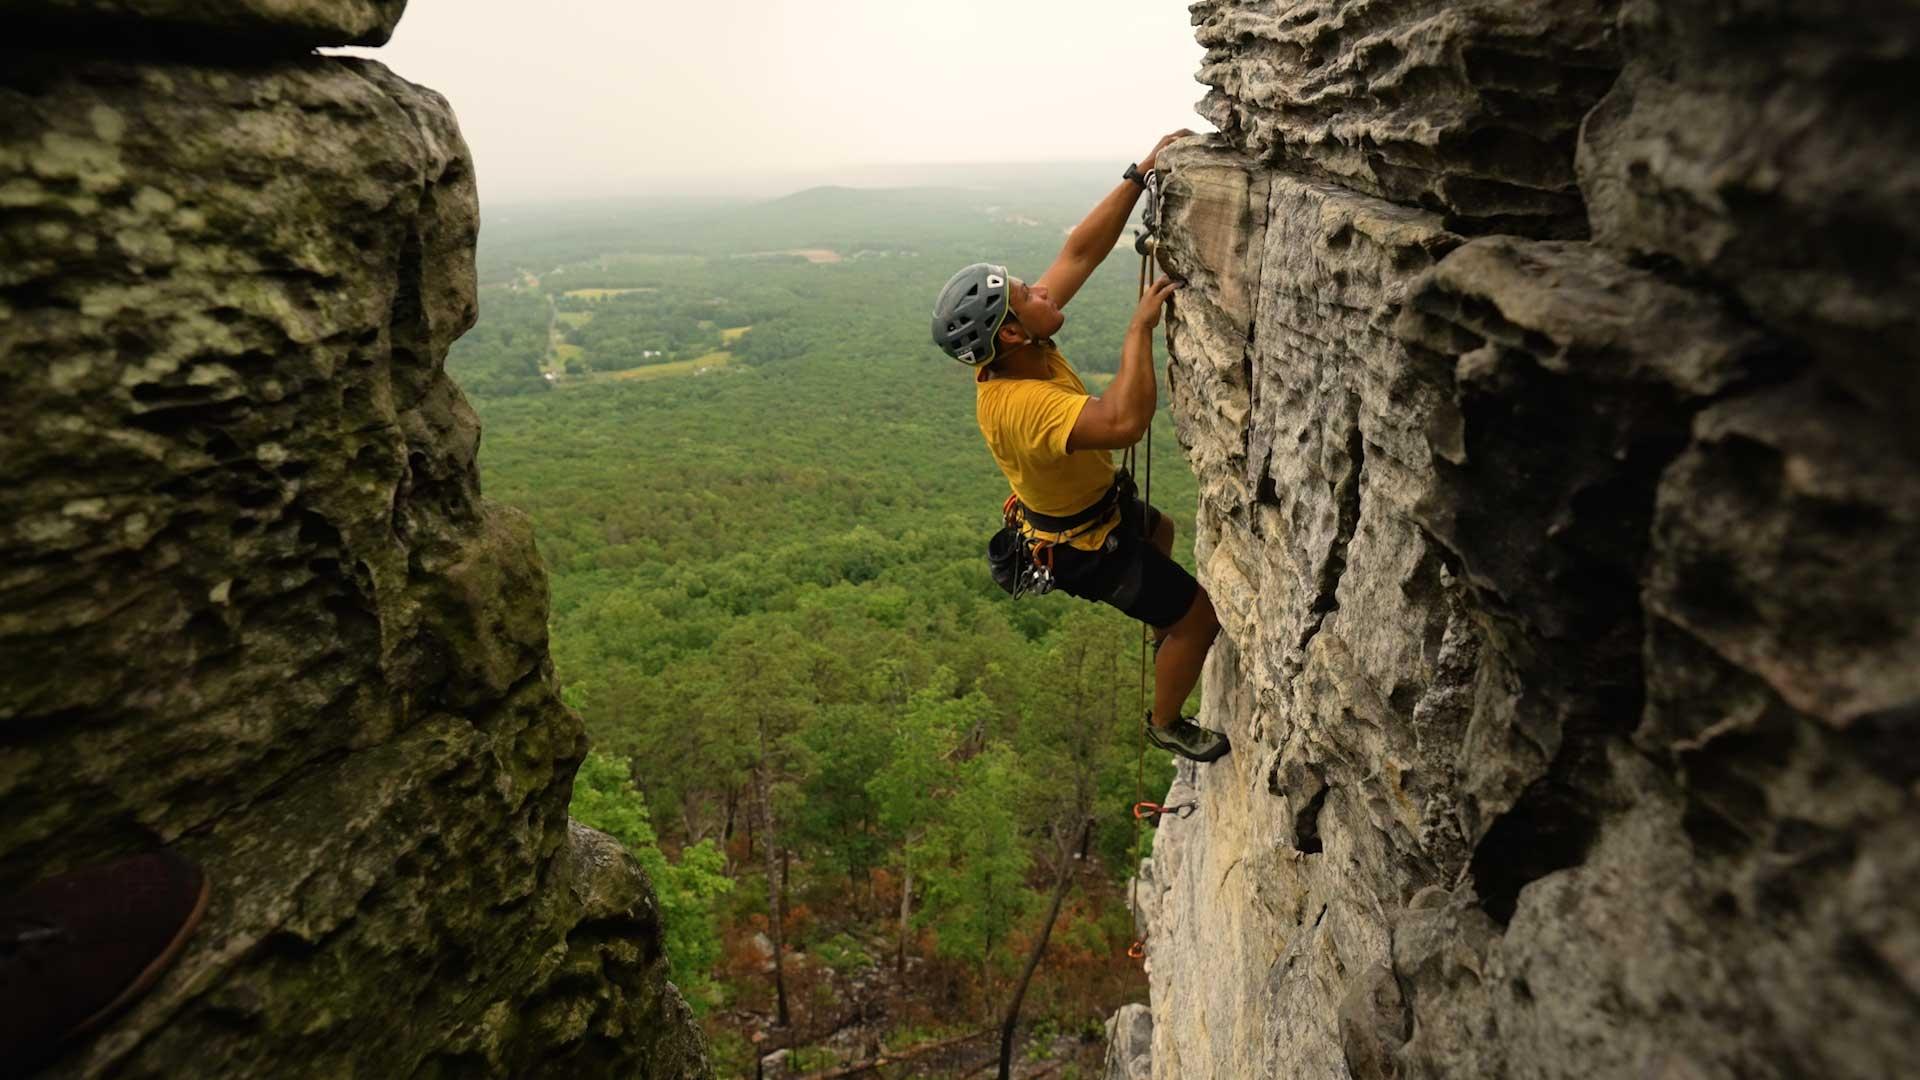 A man rock climbing at Pilot Mountain State Park